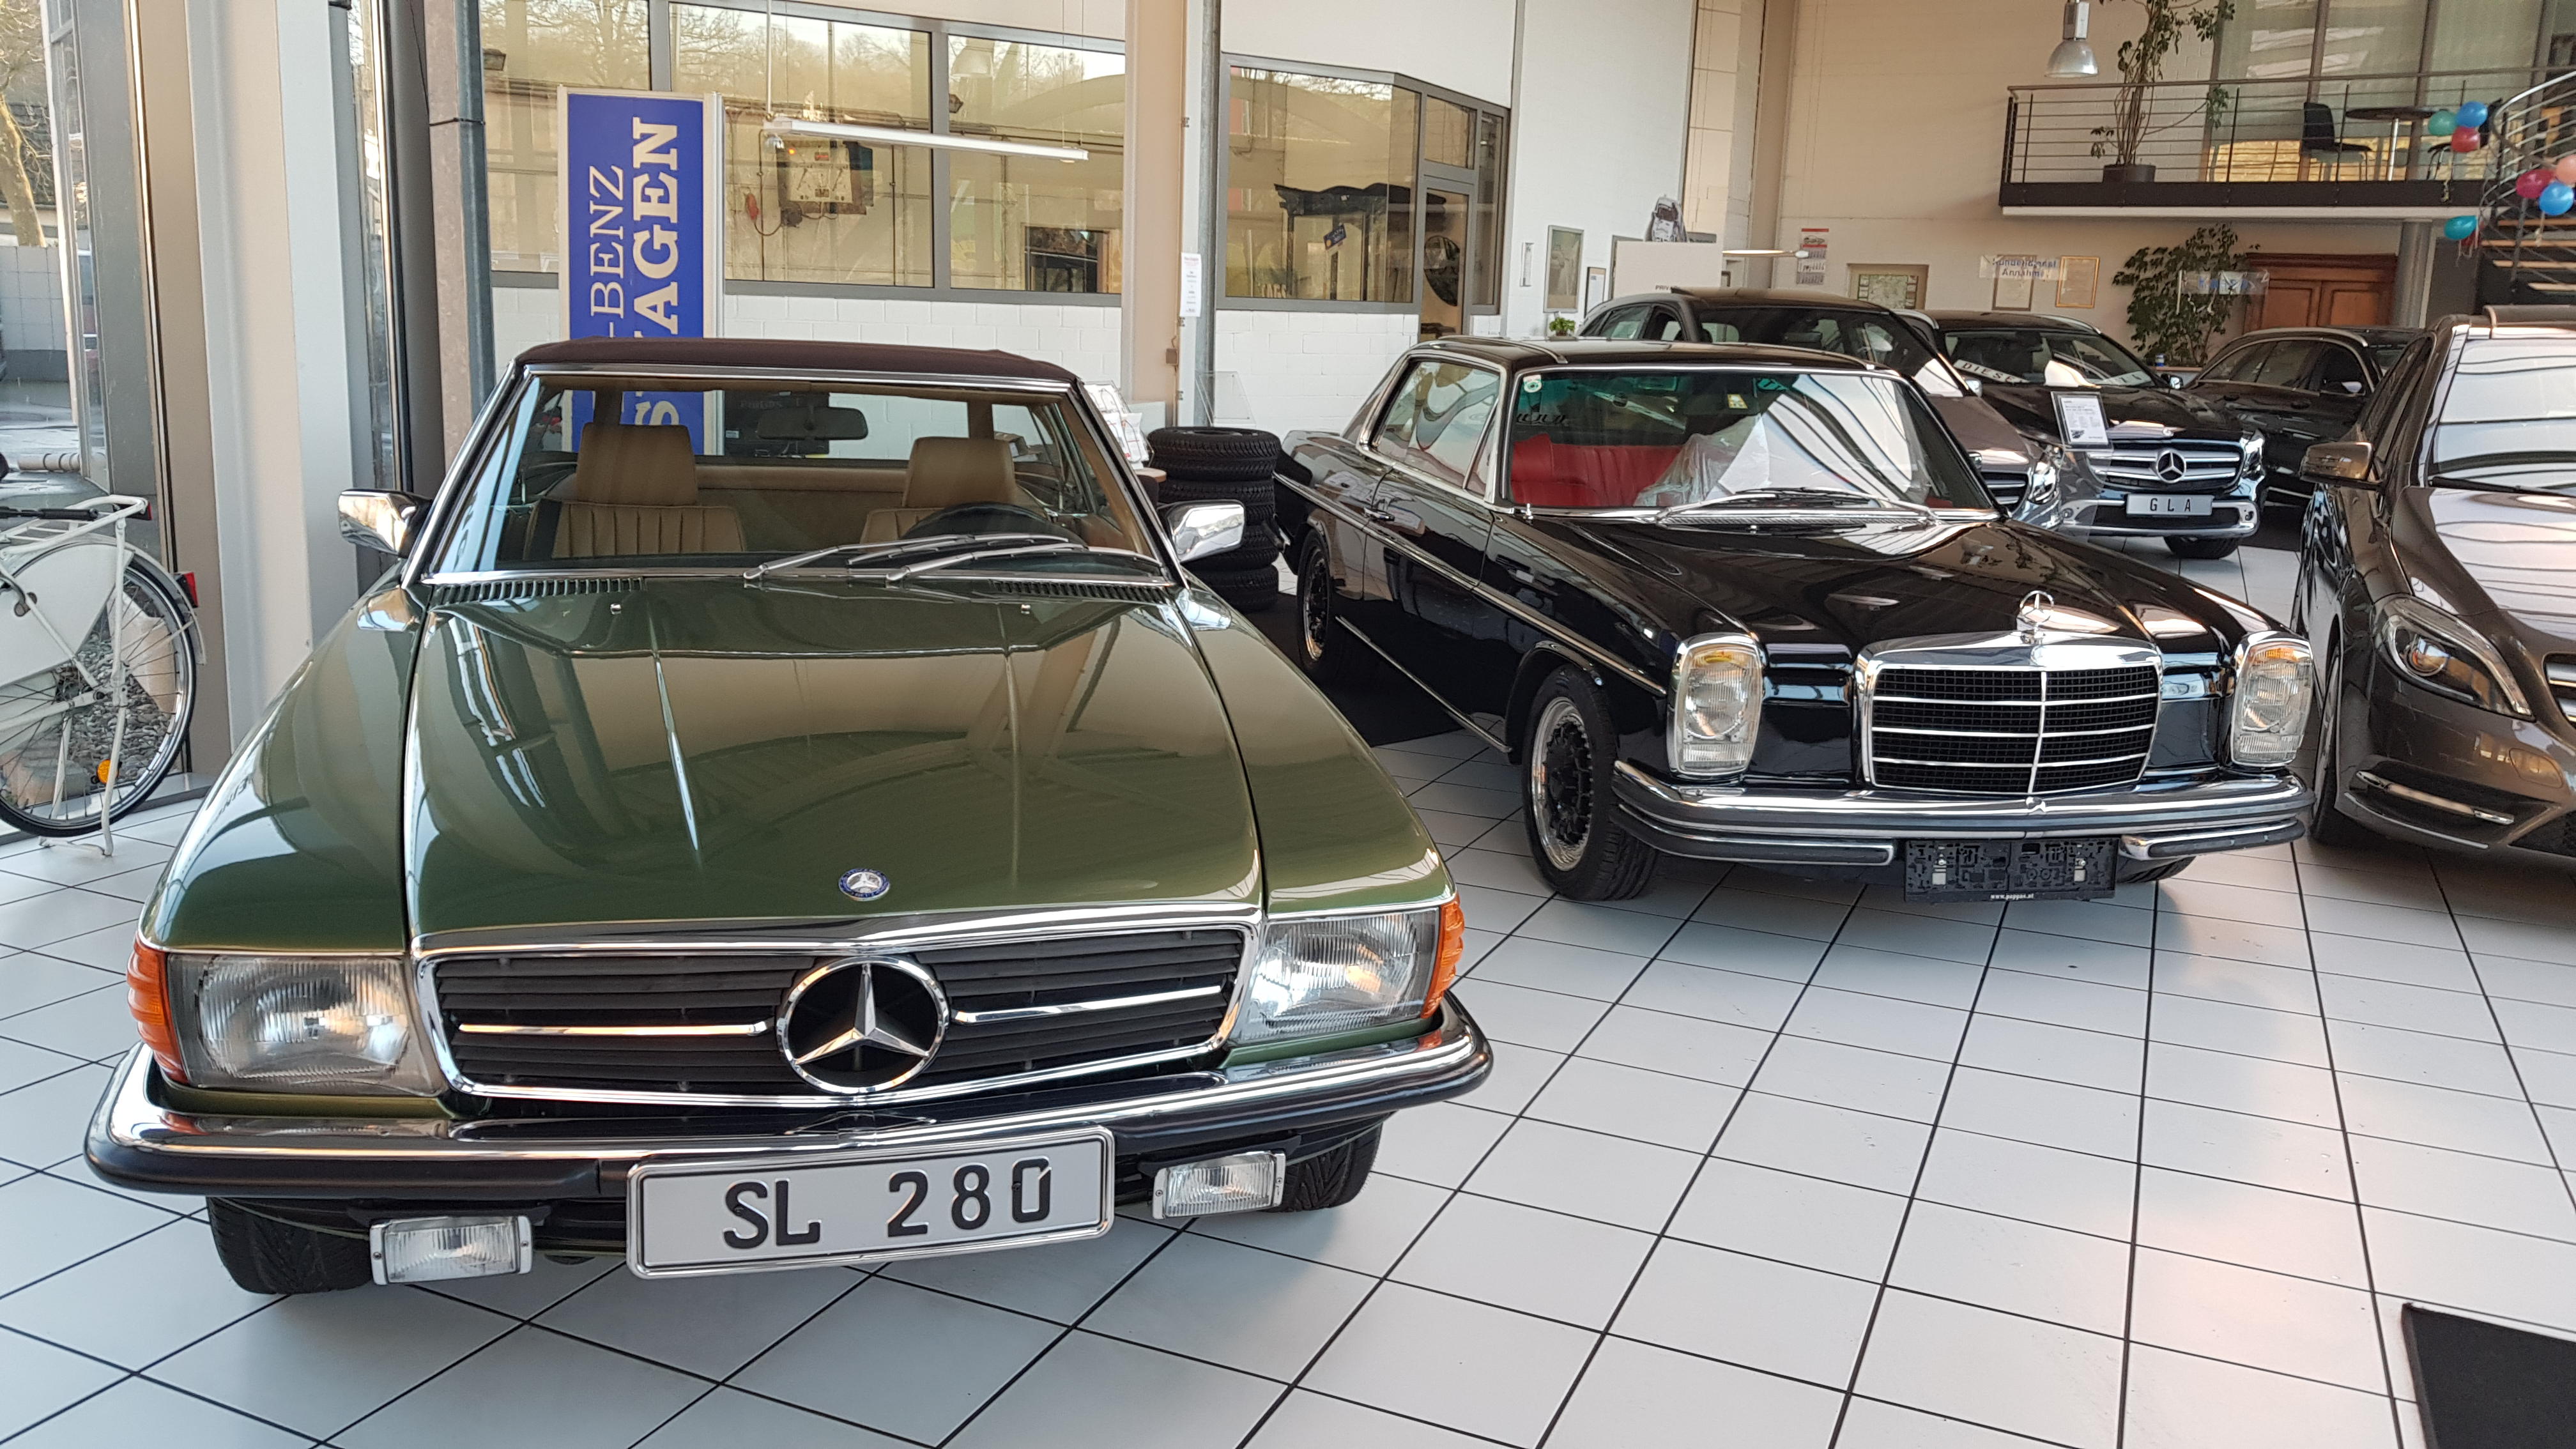 Autohaus Kudrass | Spezialist für junge gebrauchte Mercedes Fahrzeuge